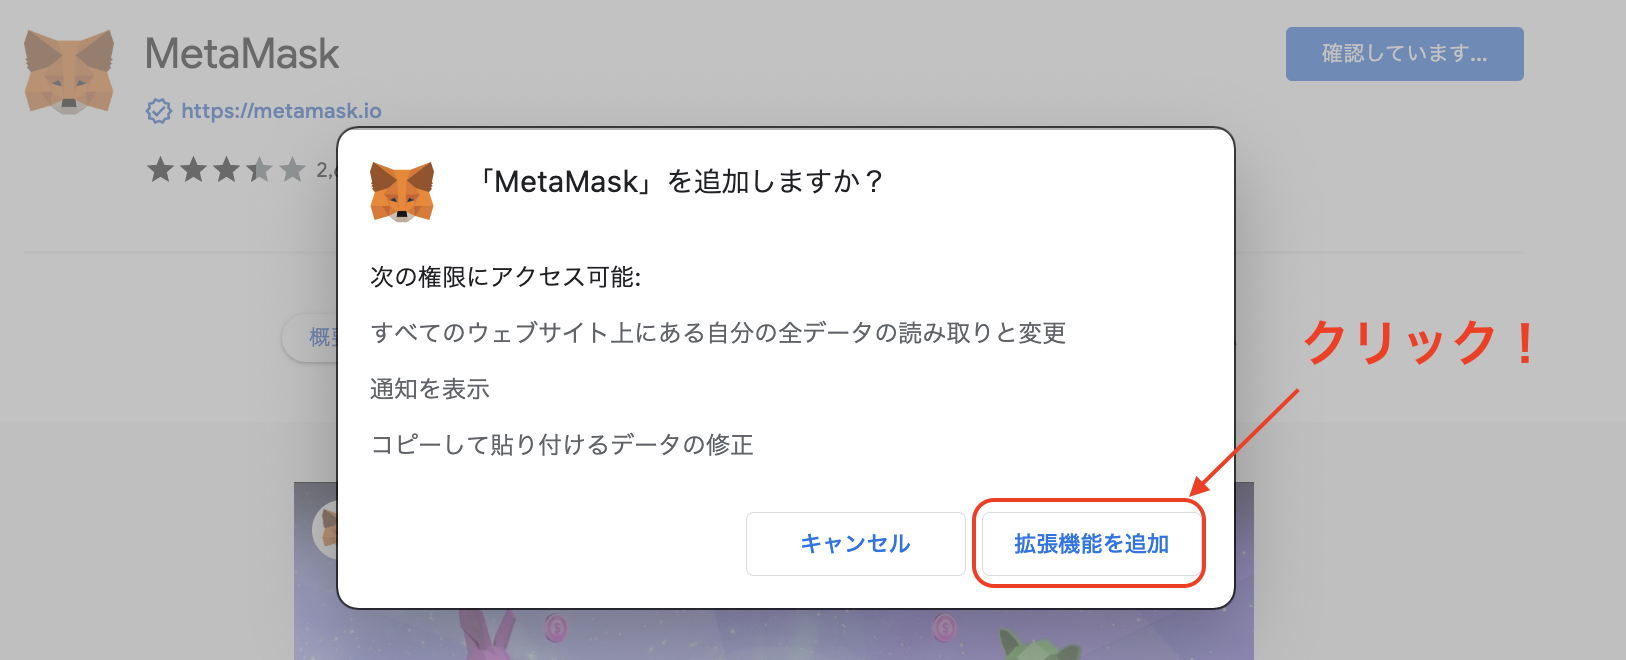 MetaMask（メタマスク）のスマホアカウントをPCアカウントに同期させる3つの手順